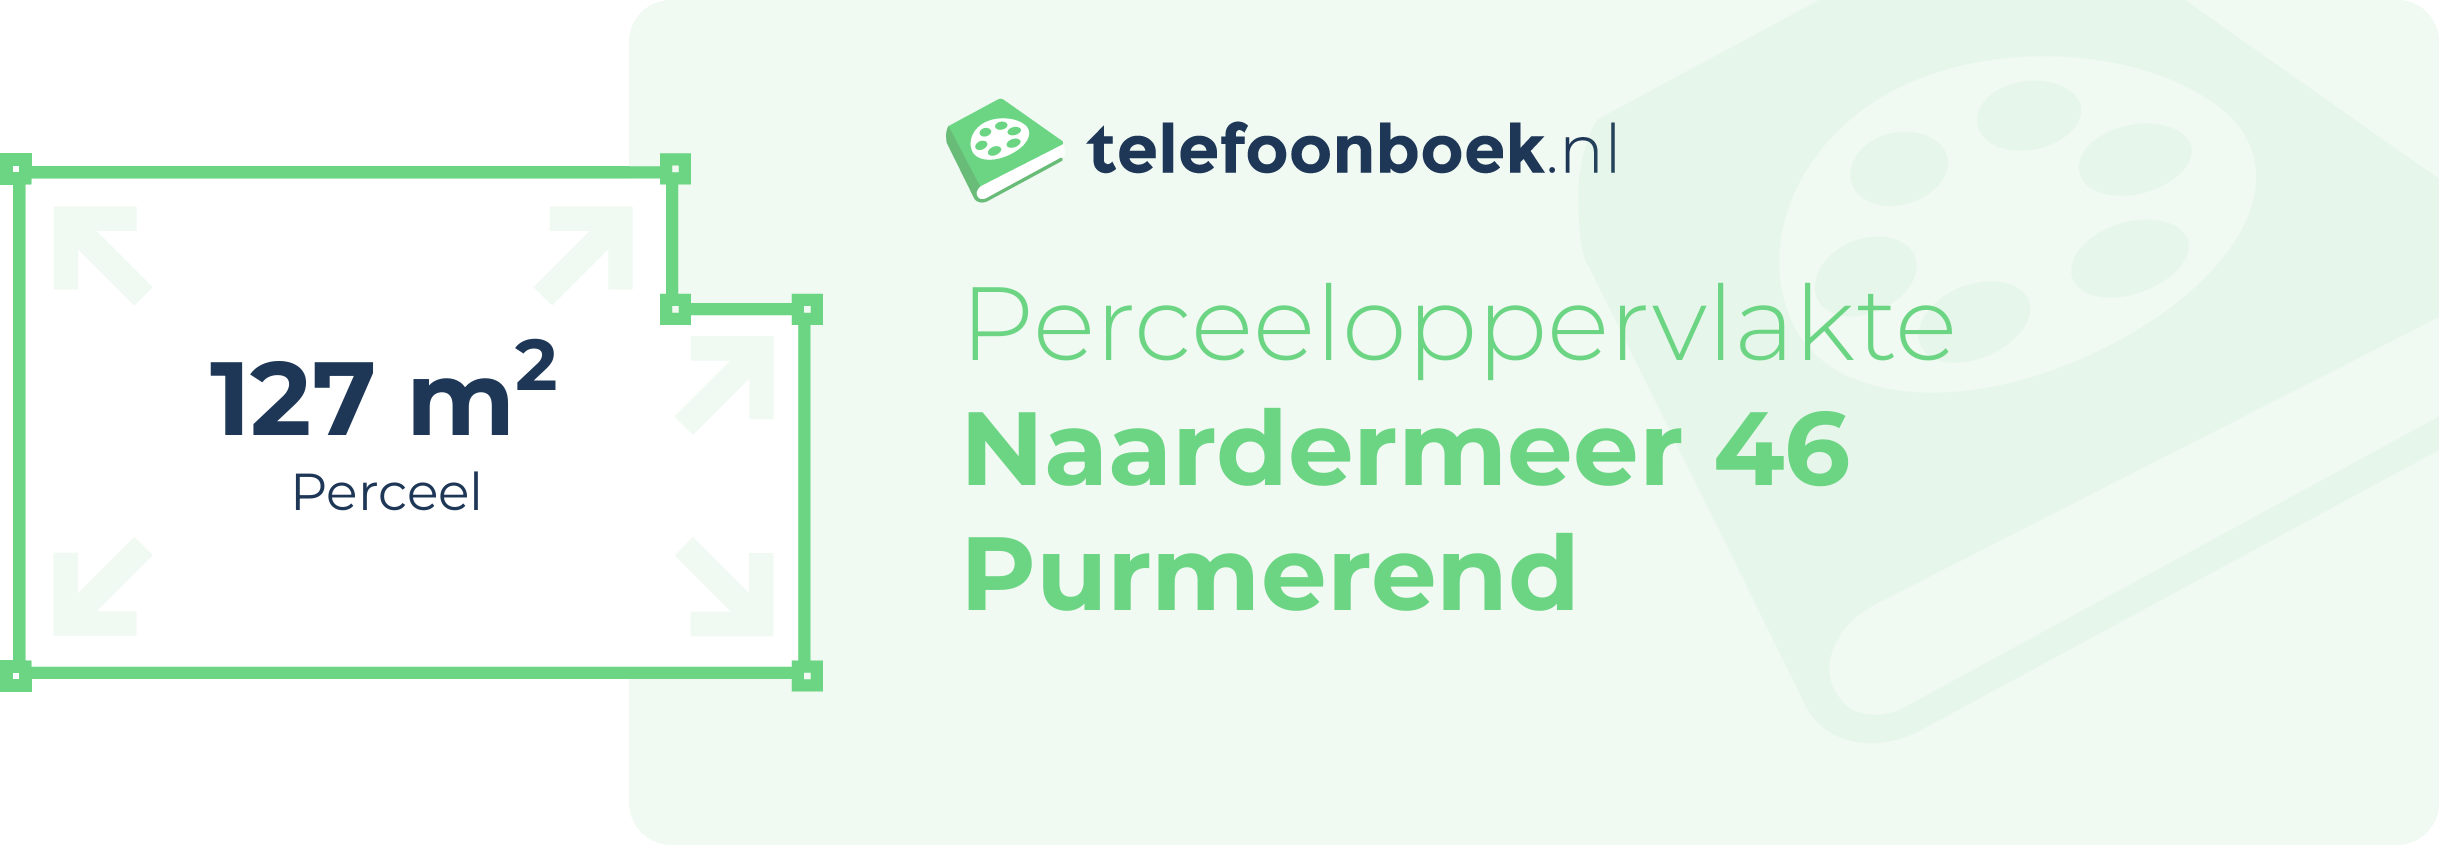 Perceeloppervlakte Naardermeer 46 Purmerend